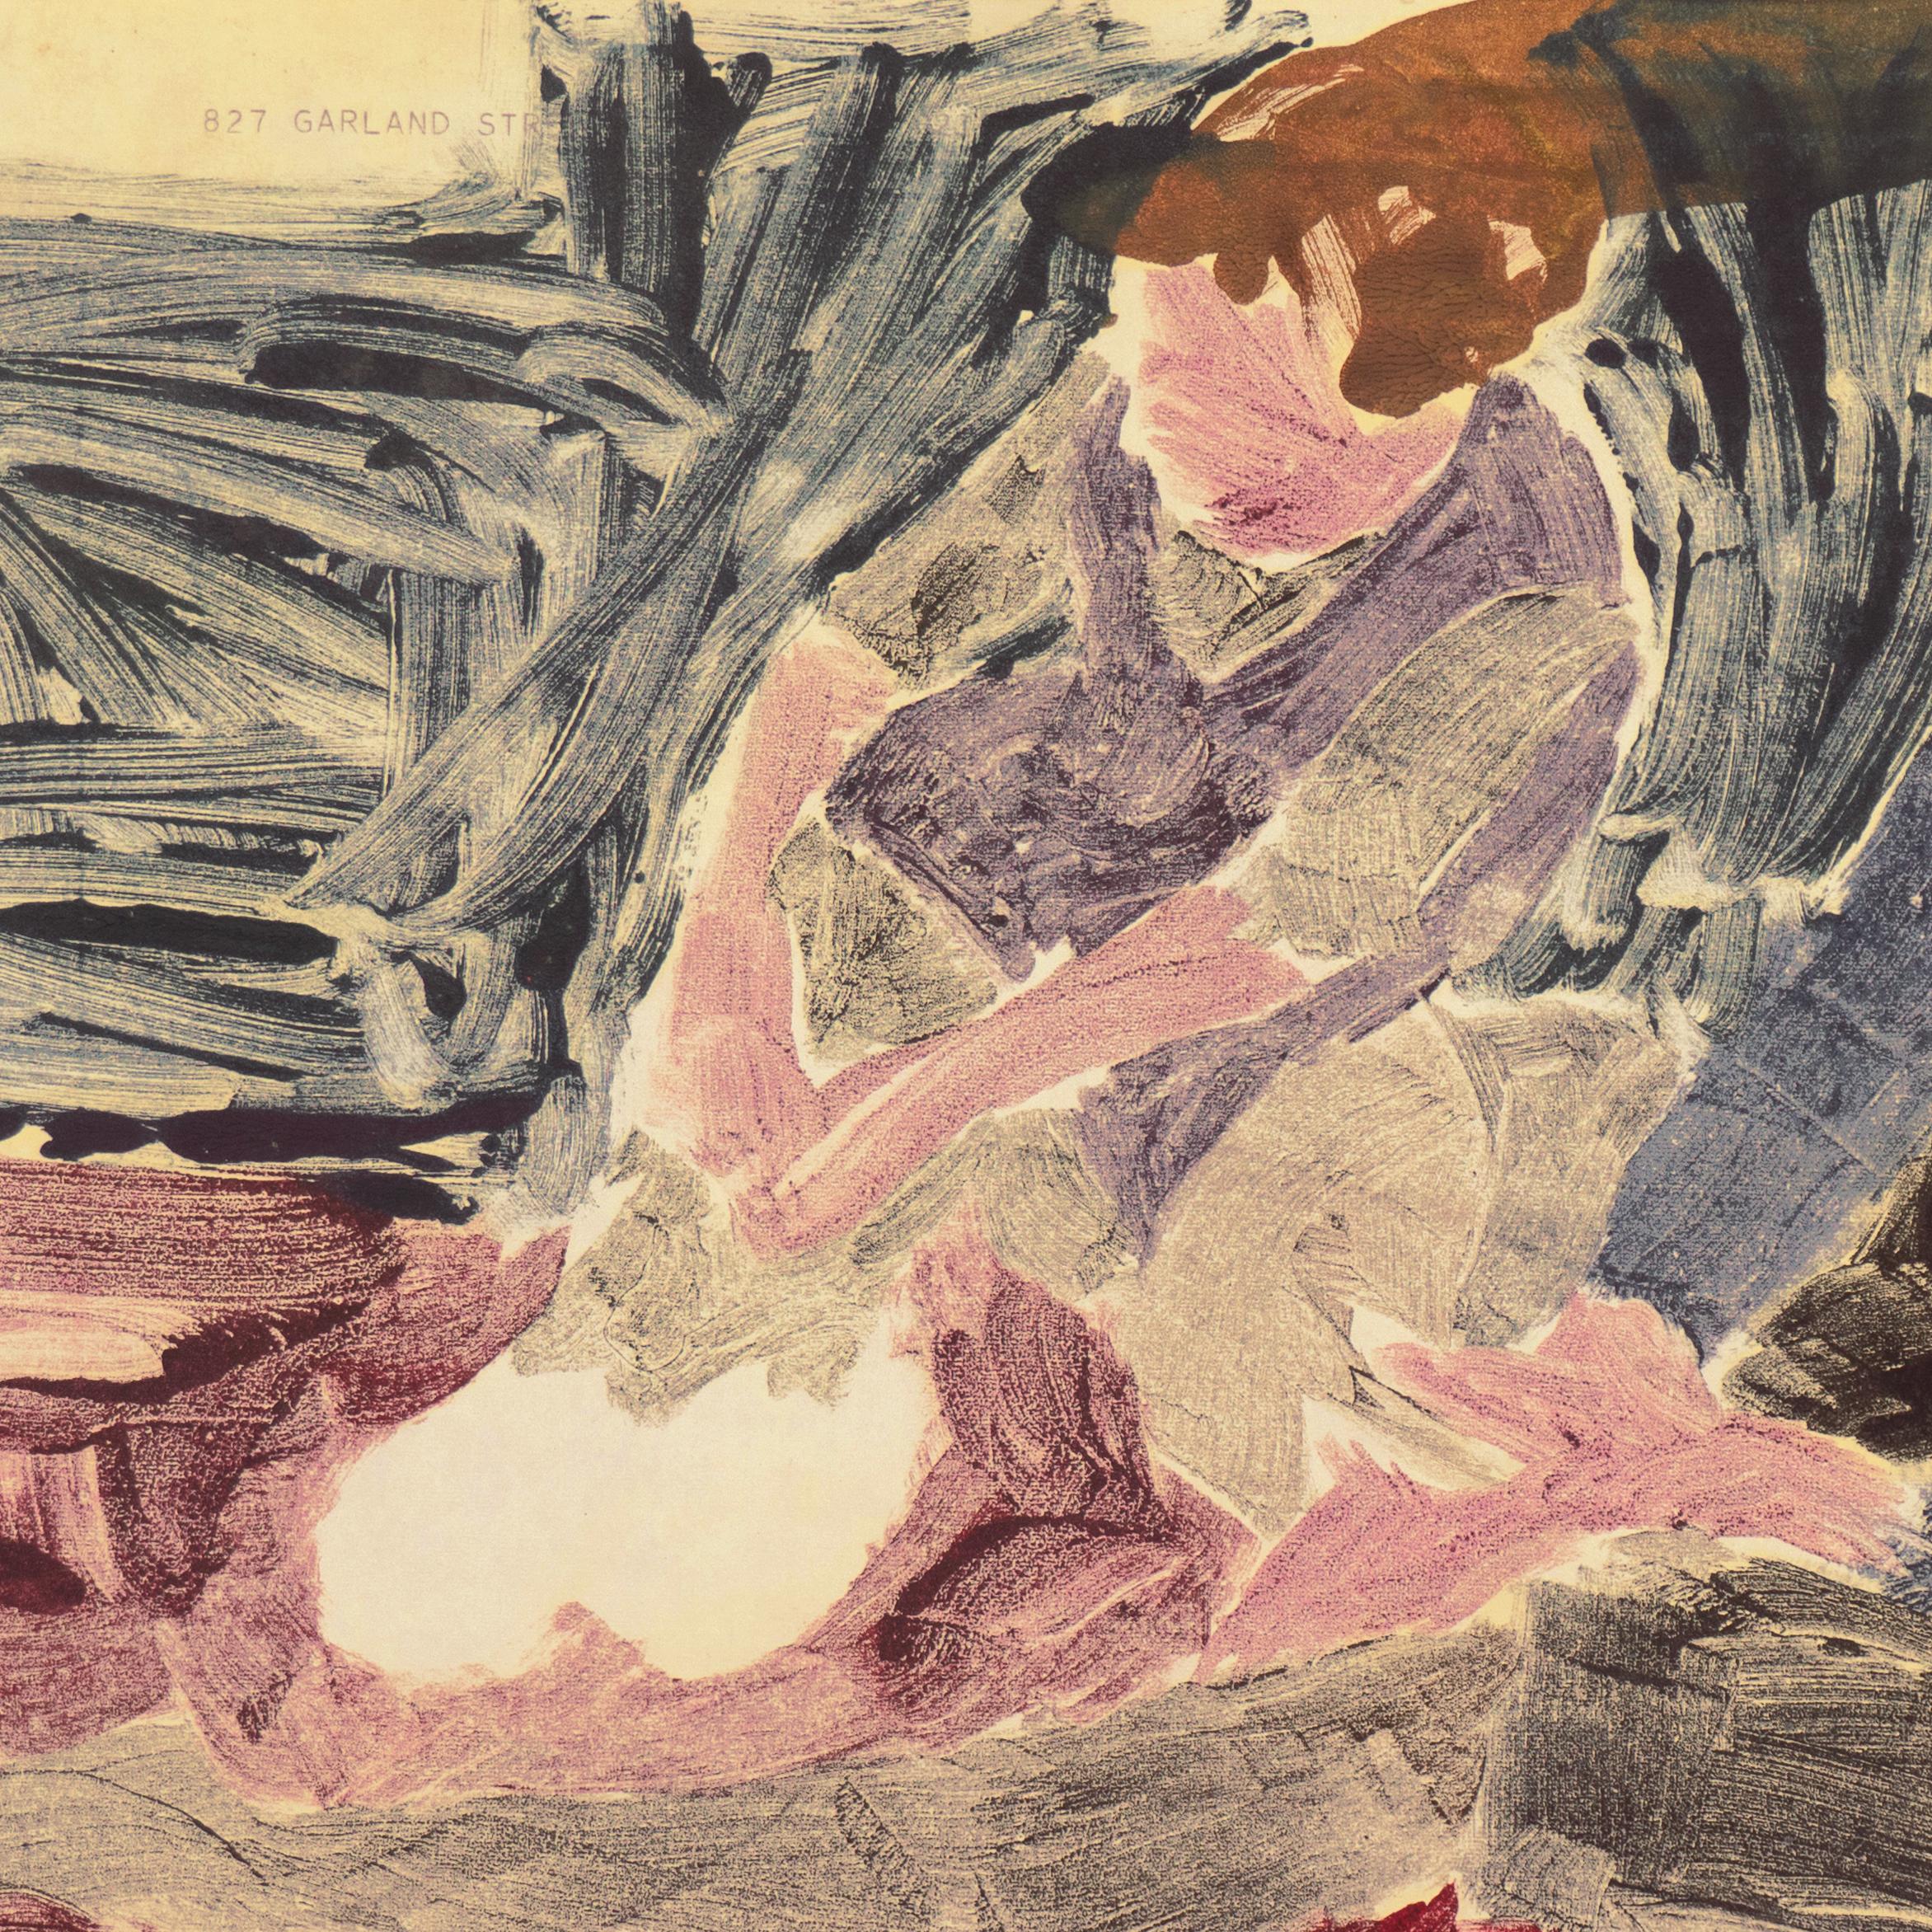 Peint par Victor Di Gesu (américain, 1914-1988) vers 1955 et portant au verso le cachet de la succession de Victor Di Gesu.

Un monotype expressionniste et audacieux représentant deux jeunes femmes assises côte à côte, l'une portant une paire de